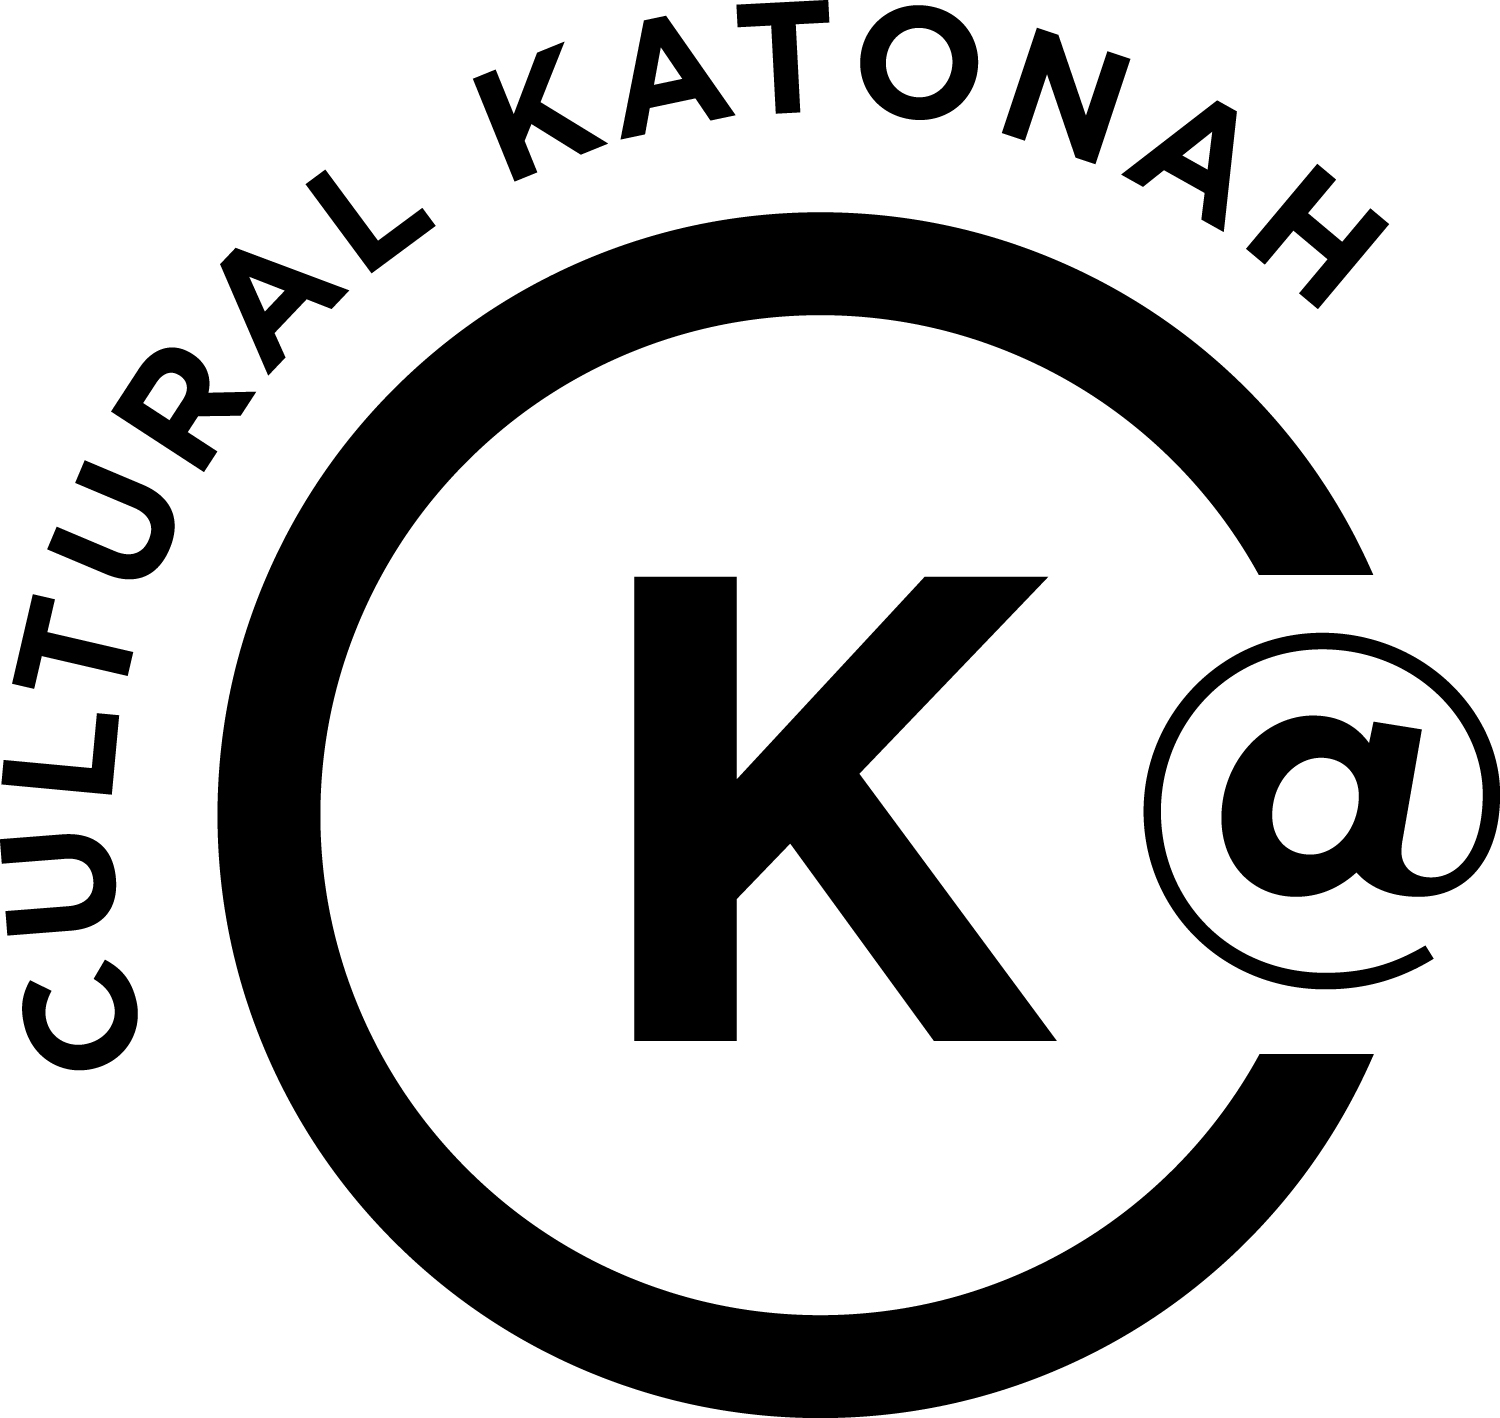 Cultural Katonah logo